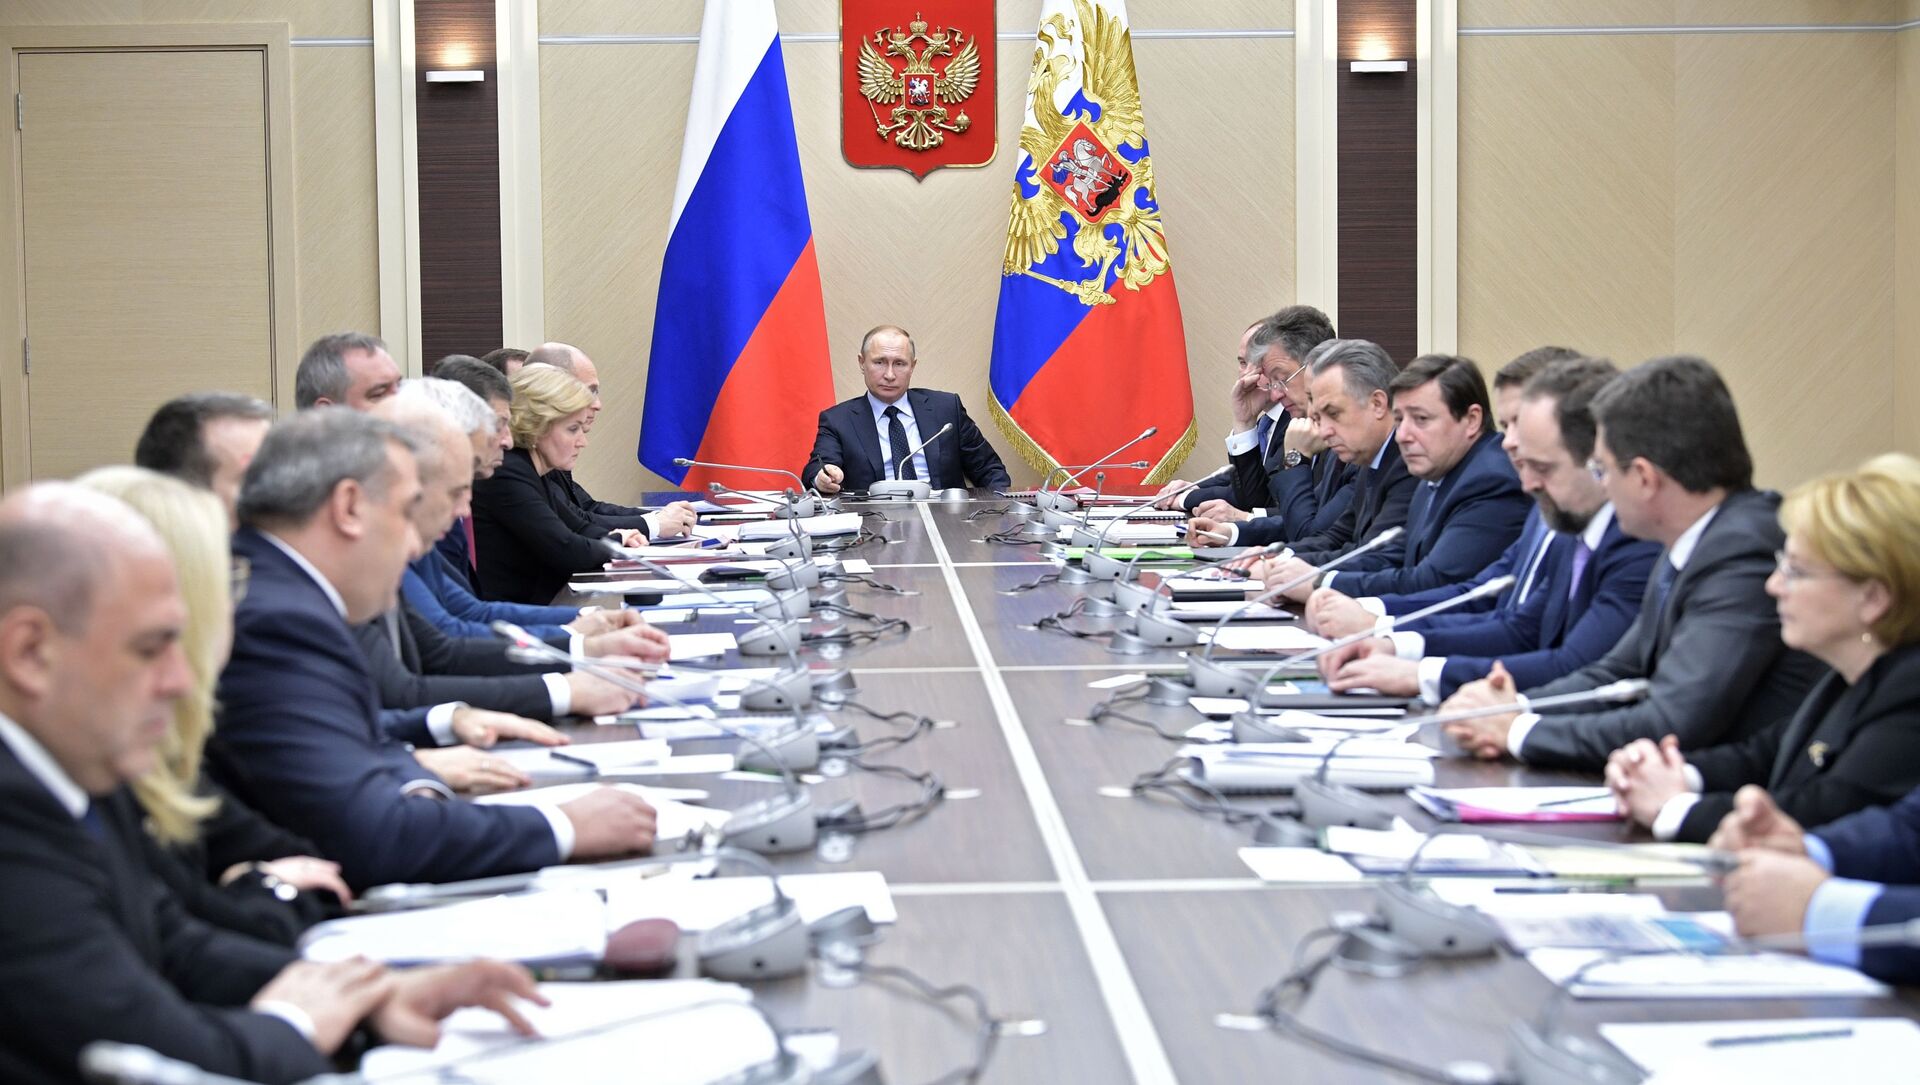 الرئيس فلاديمير بوتين خلال الاجتماع مع أعضاء مجلس الأمن الروسي، 31 يناير/ كانون الثاني 2018 - سبوتنيك عربي, 1920, 13.07.2021